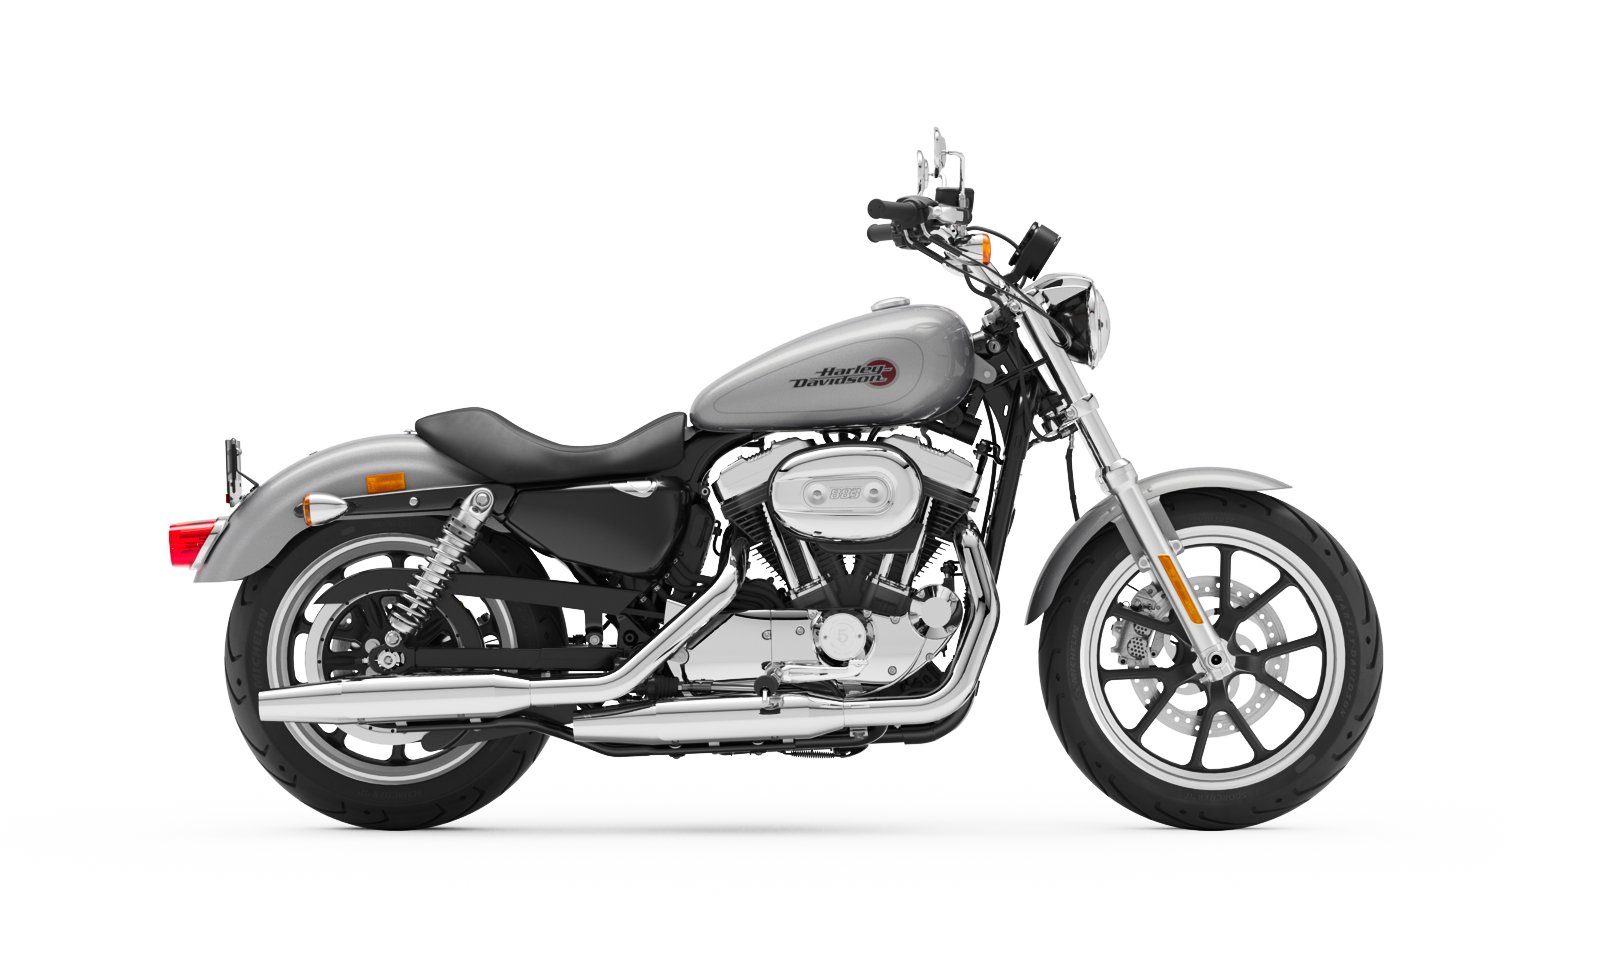 2020 Harley Davidson Superlow Motorcycle Harley Davidson Middle East